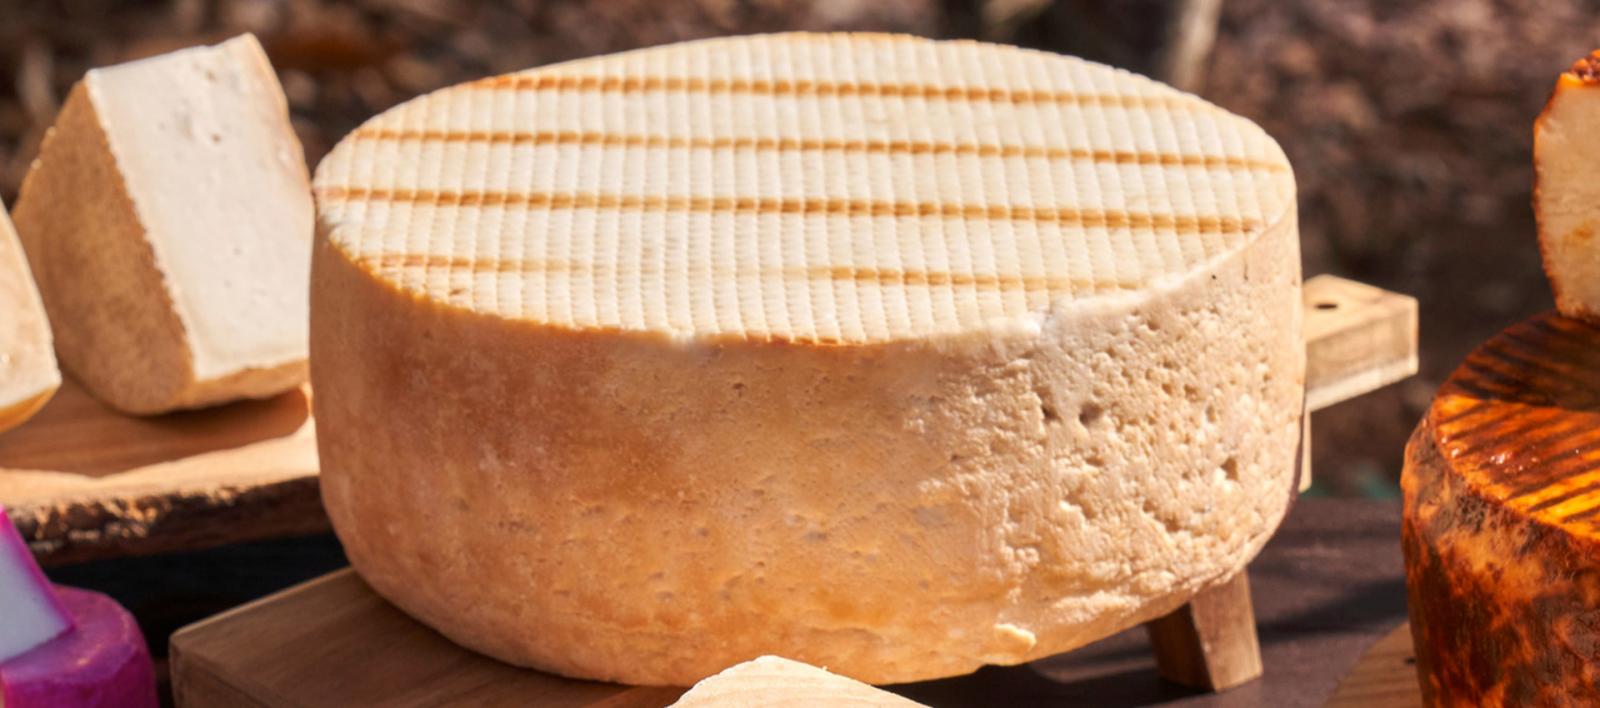 Una forma intera di formaggio canario posizionata su un tagliere di legno, circondata da altri pezzi di formaggio